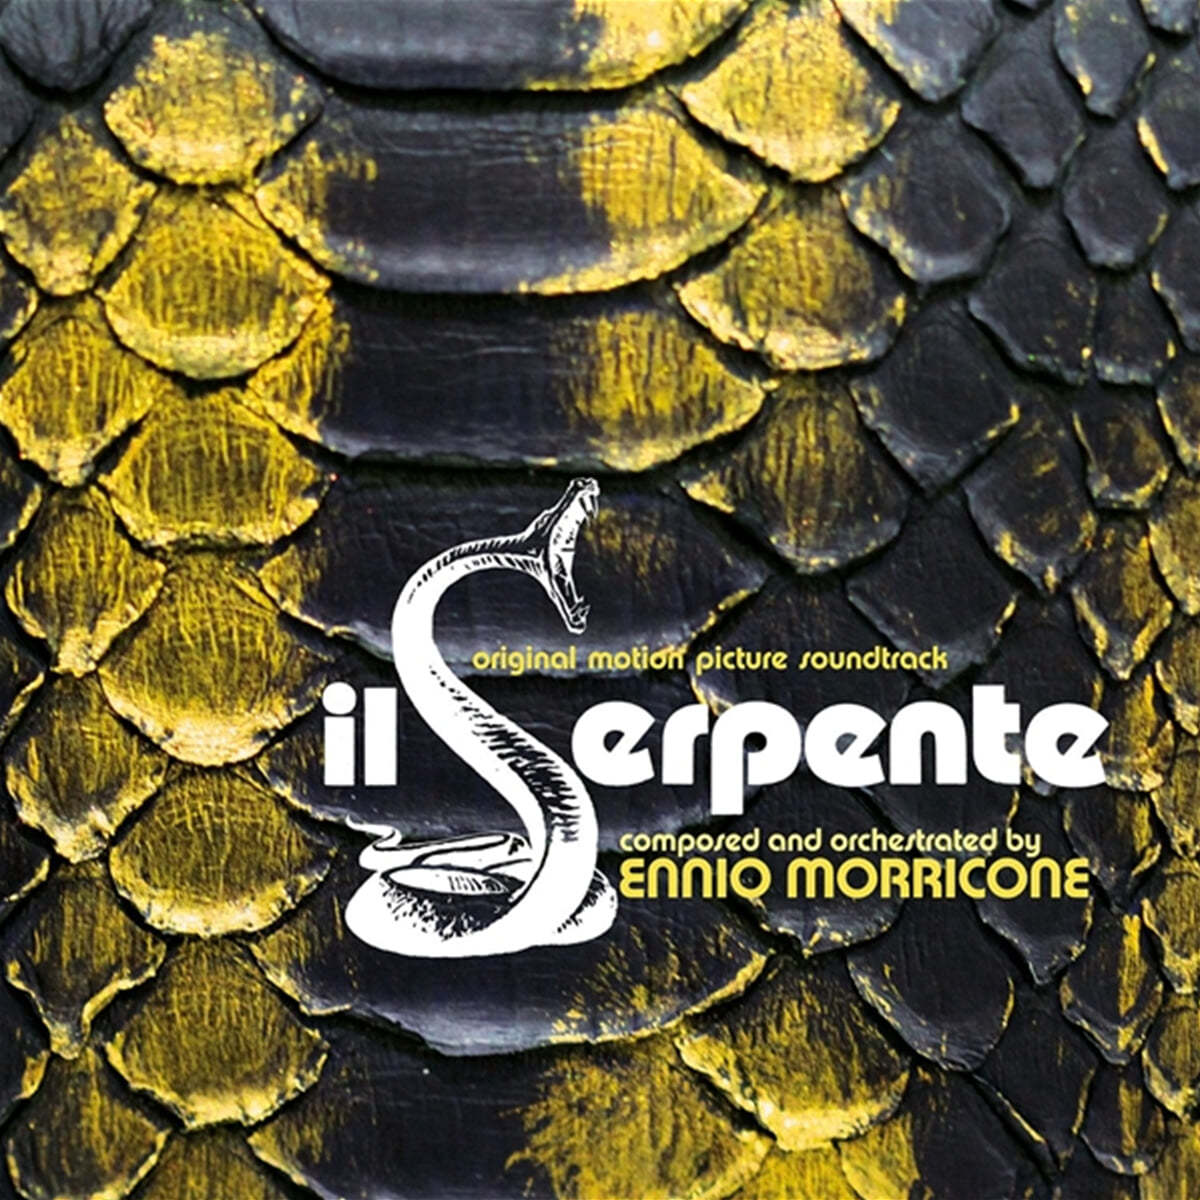 일 세르펜테 영화음악 (Il serpente OST by Ennio Morricone) [투명 옐로우 컬러 LP]